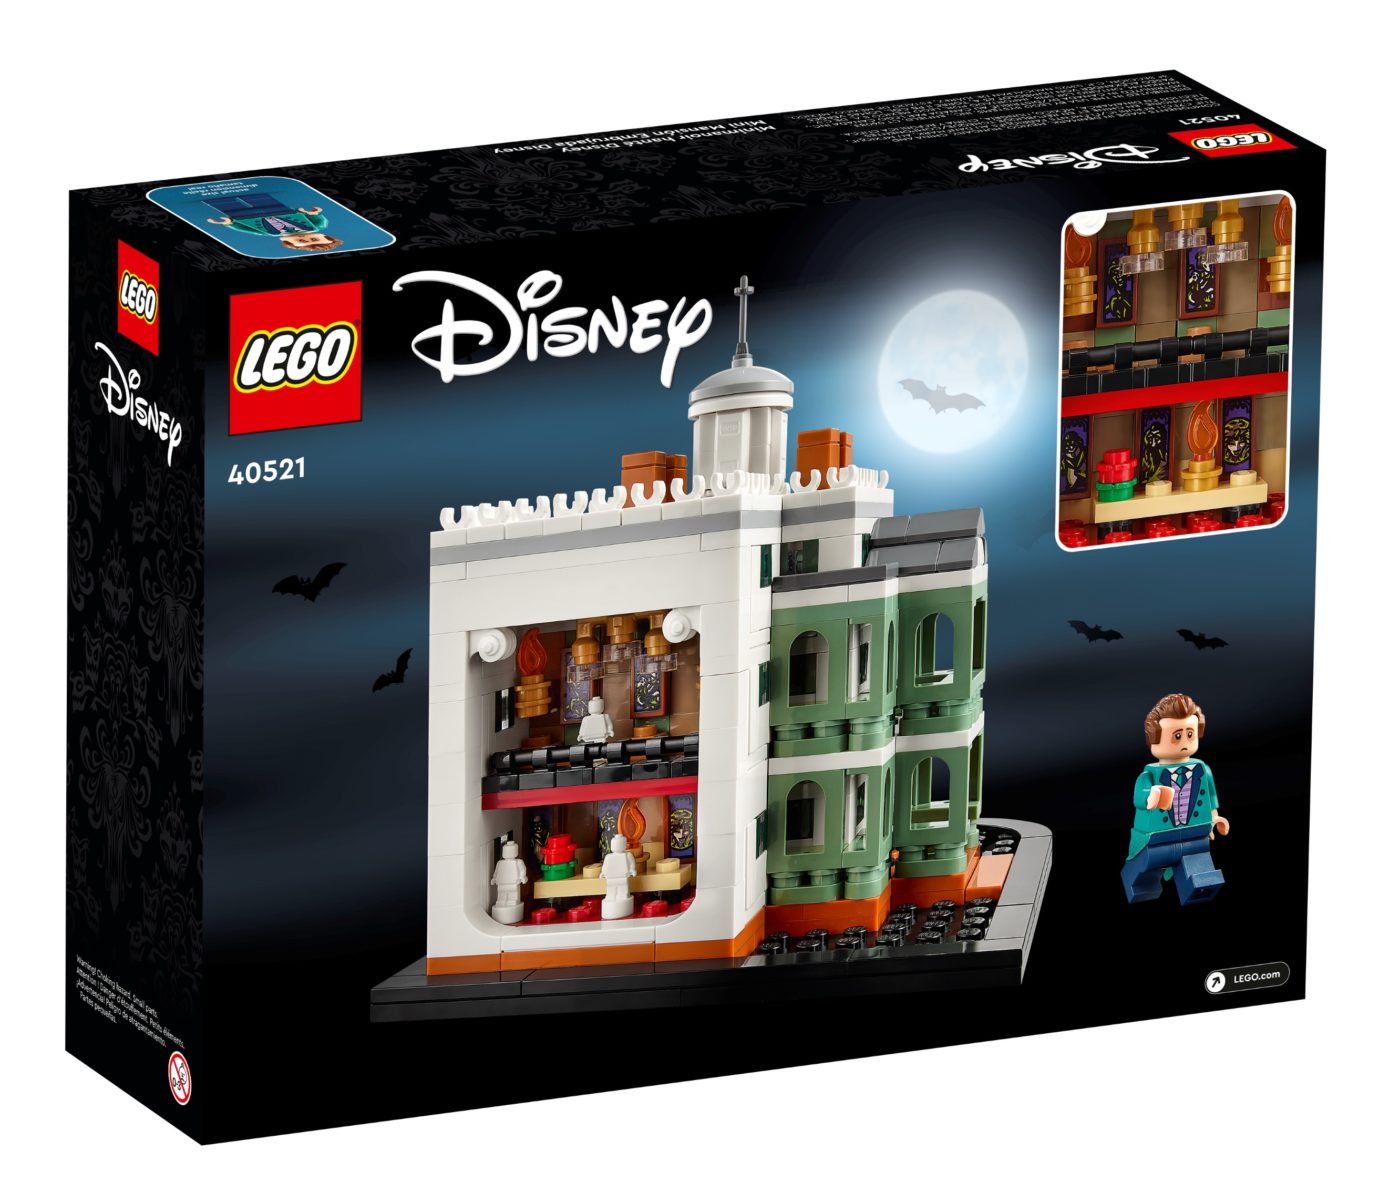 LEGO  Mini Disney The Haunted Mansion revealed!   Jay's Brick